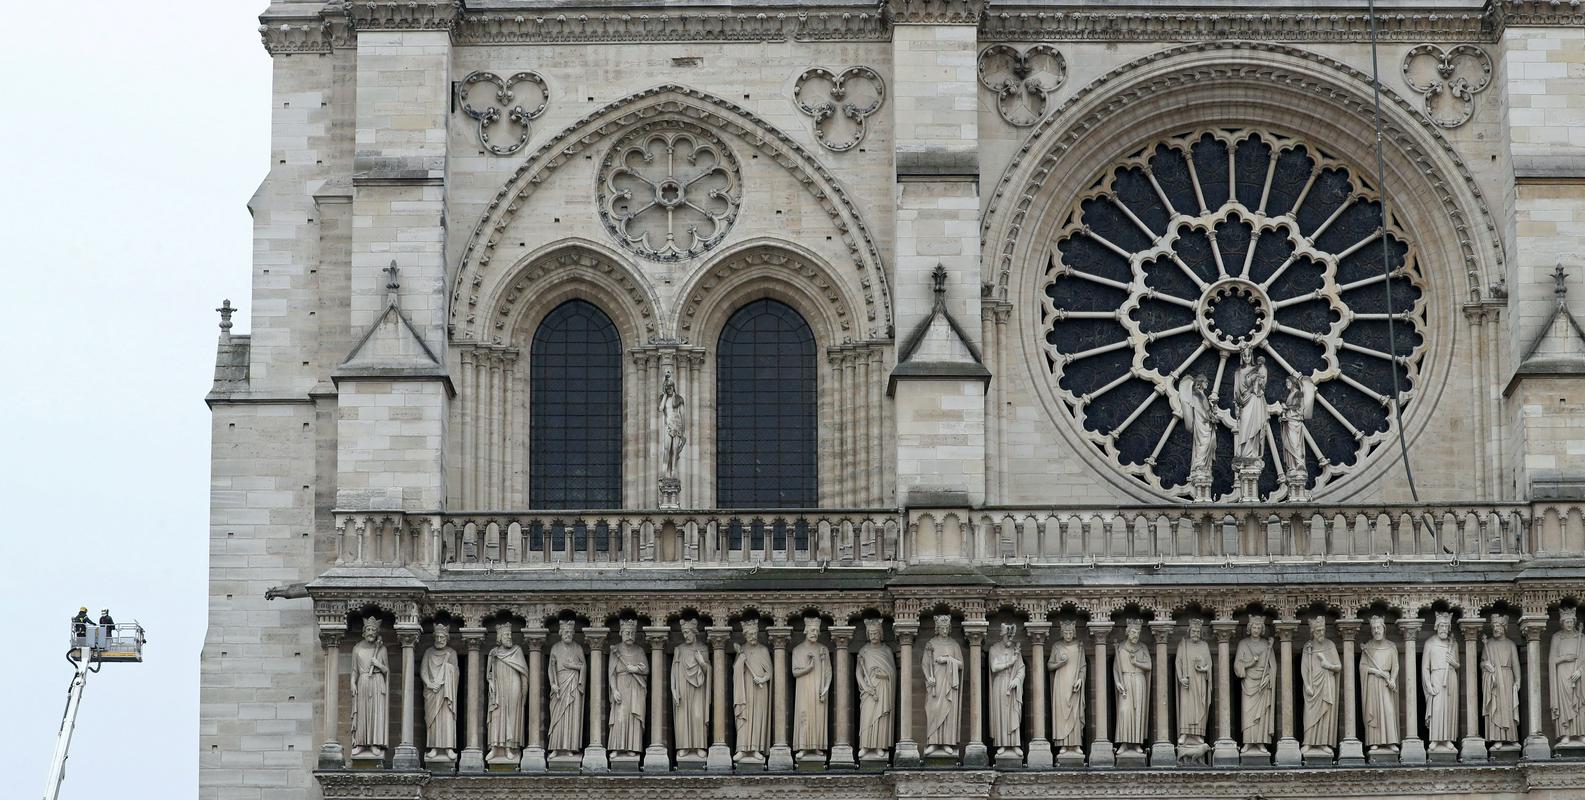 Čez celotno širino zahodnega pročelja se pne galerija s kipi francoskih kraljev, s čimer so  poudarili svojo povezanost z nebeškim kraljestvom in s tem skušali dodatno legitimirati svojo oblast. Foto: Reuters